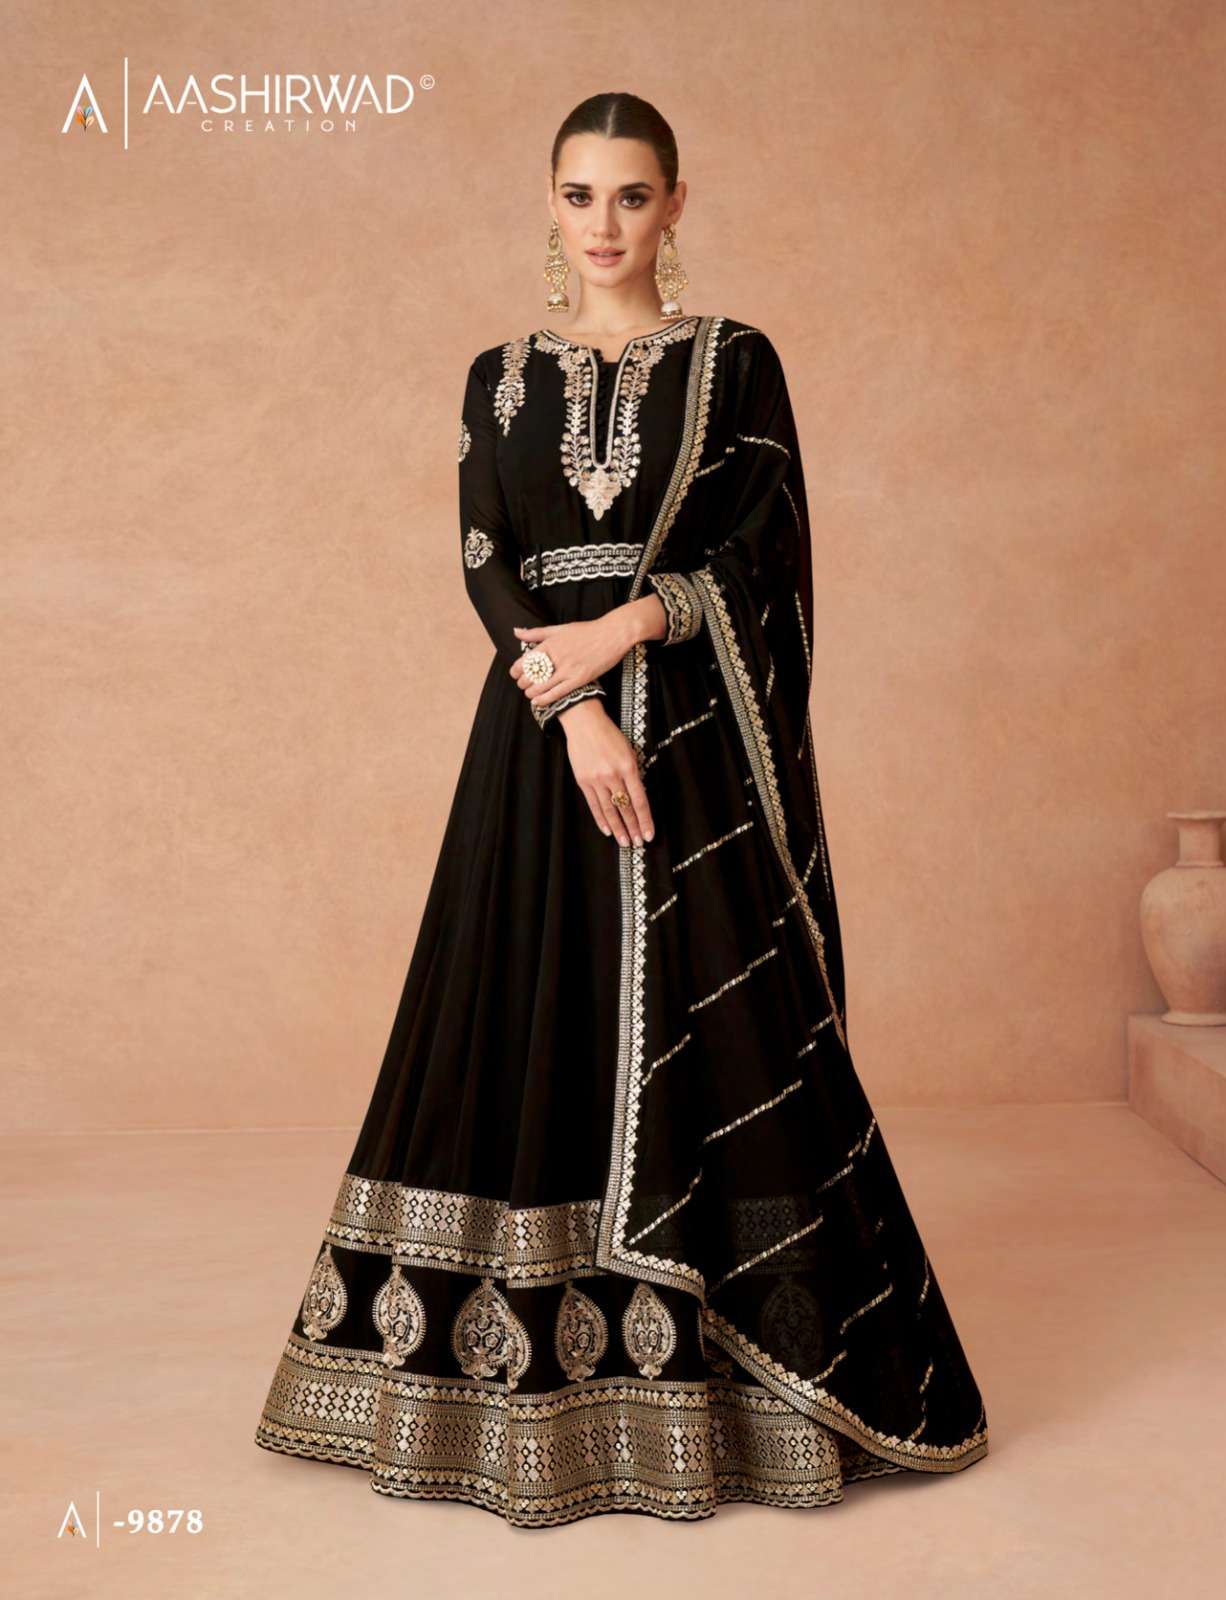 Aashirwad Creation - Rose | Anarkali suit, Black pakistani dress, Anarkali